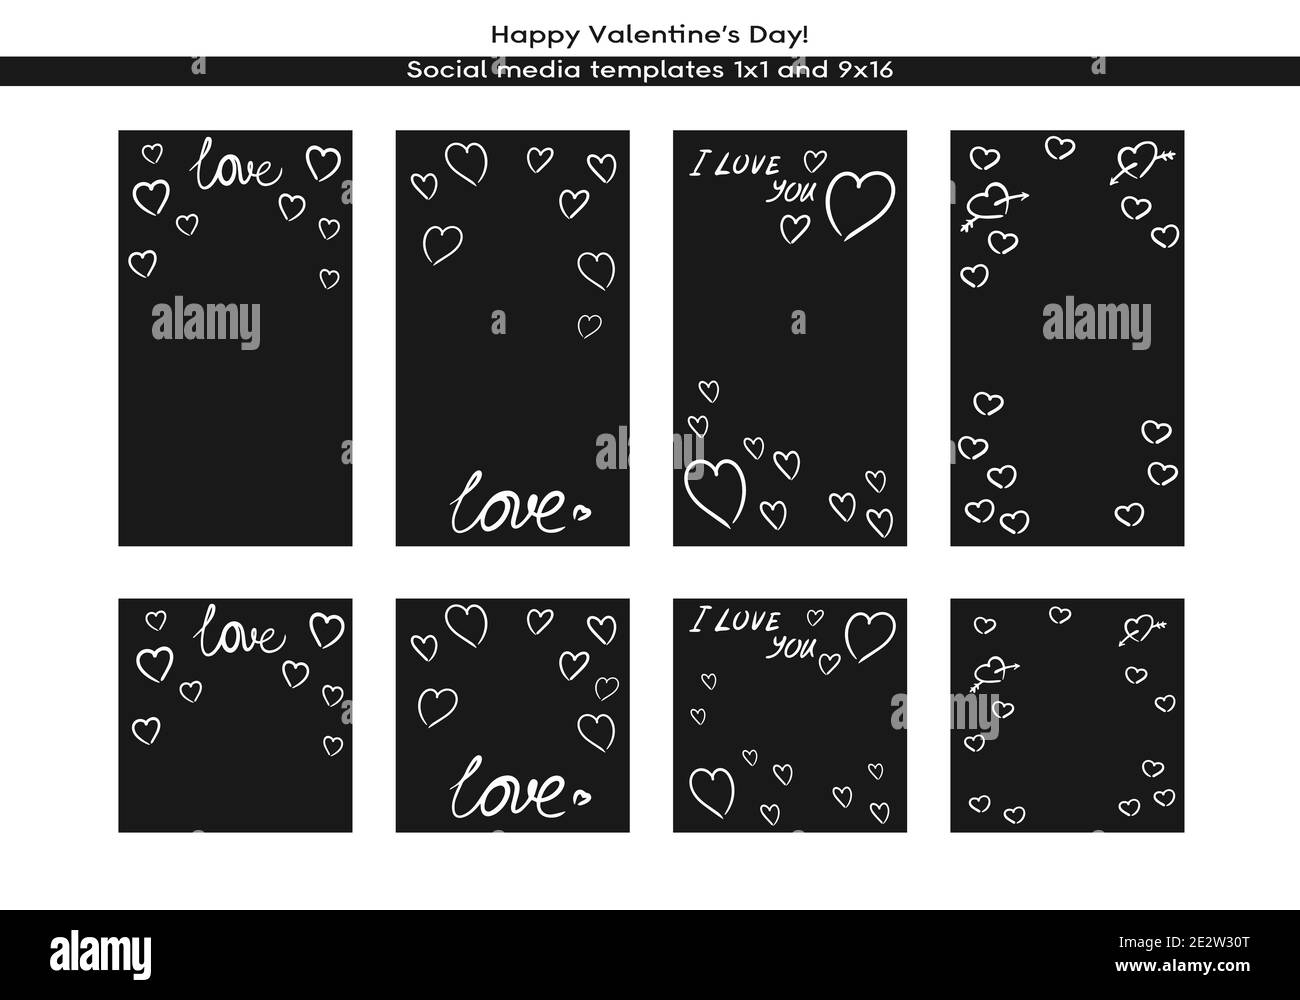 Liebe Valentinstag Social Media handgezeichnete Vorlage. Editierbarer quadratischer Postrahmen mit Kopierraum. Handgezeichnetes einfaches minimalistisches Design, trendige Doodle-Linien Stock Vektor